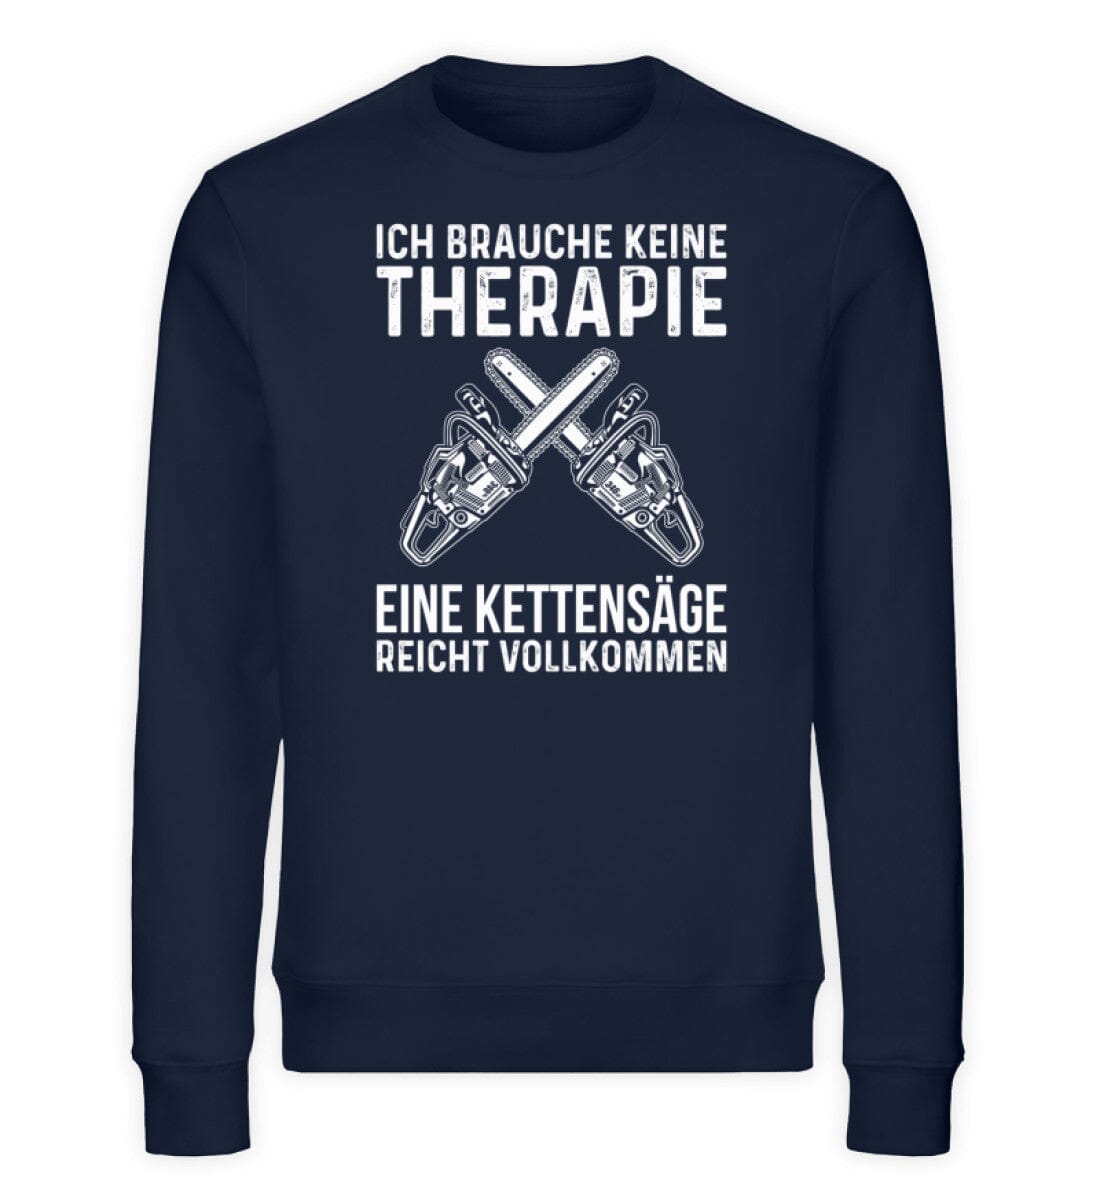 Kettensäge als Therapie - Unisex Bio Sweatshirt French Navy XS 